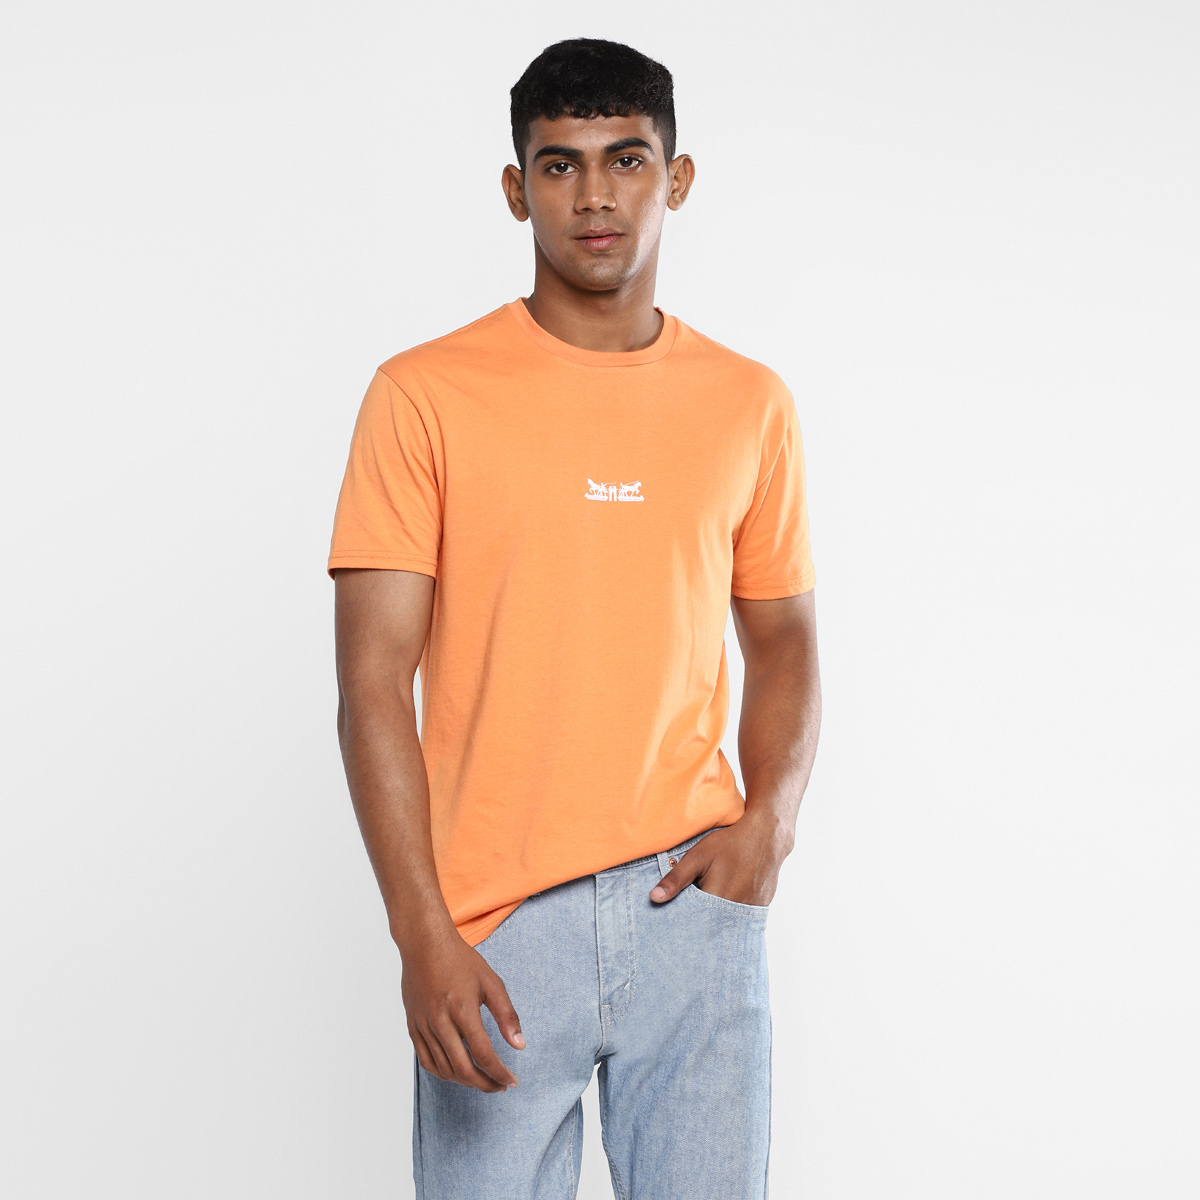 levis orange t shirt